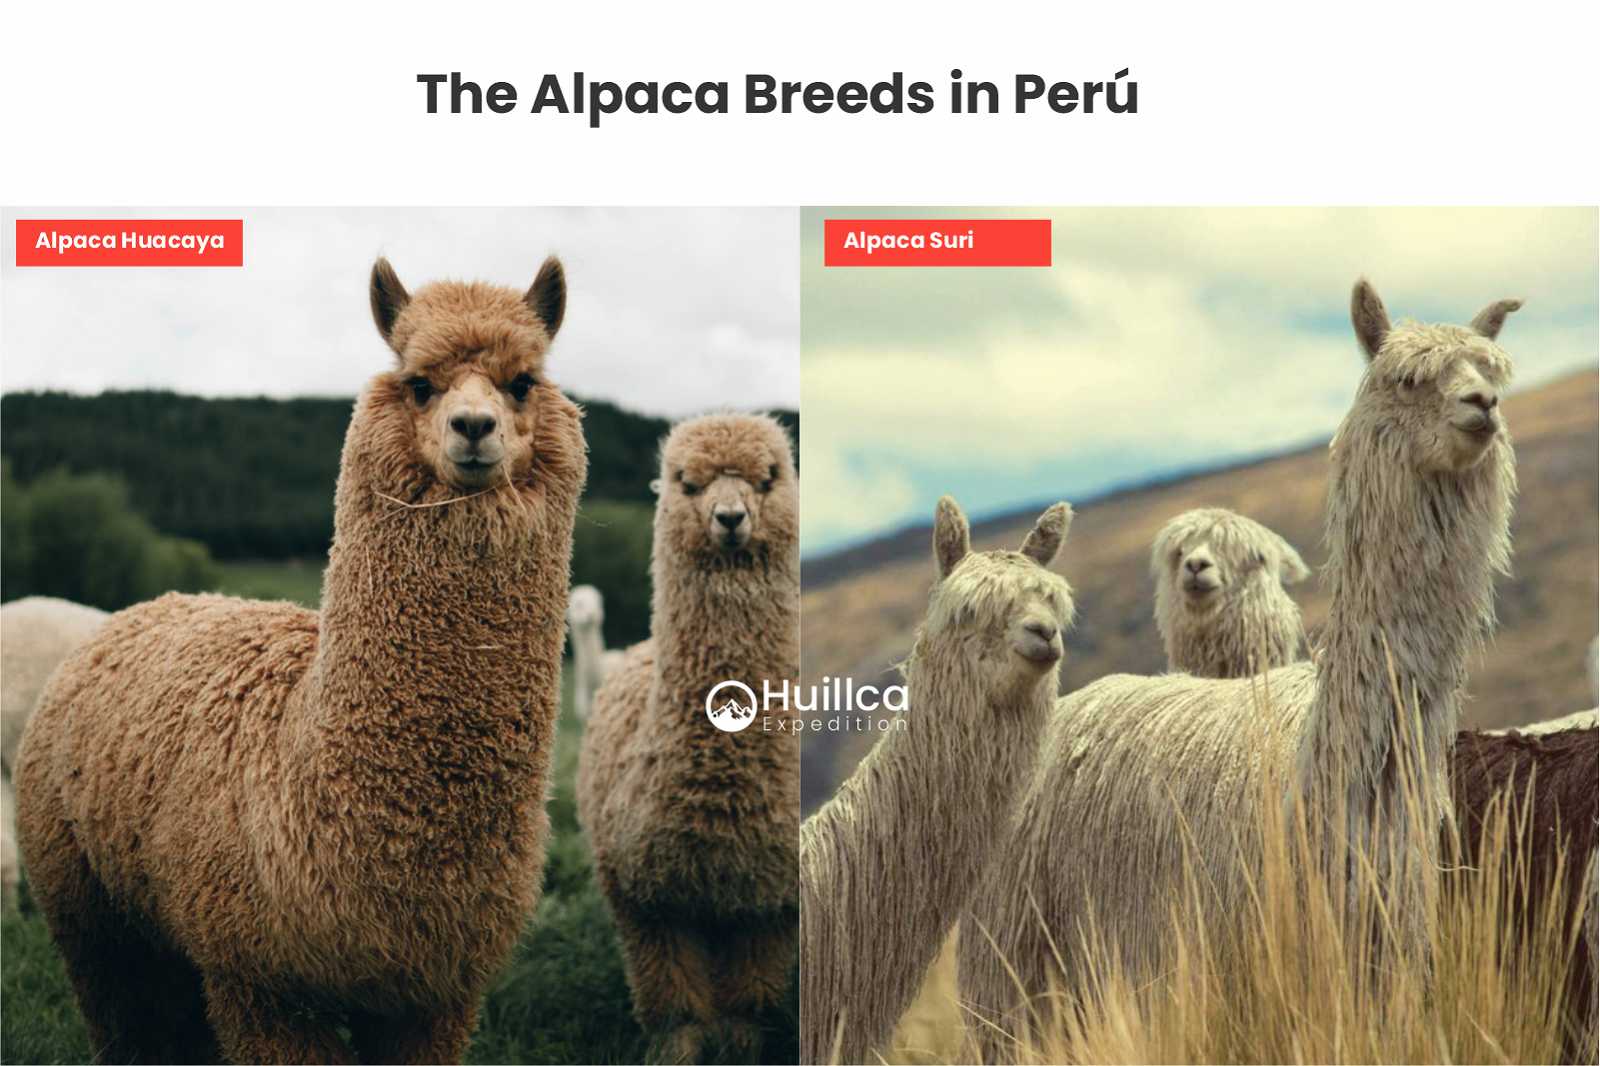 The Alpaca Breeds in Peru